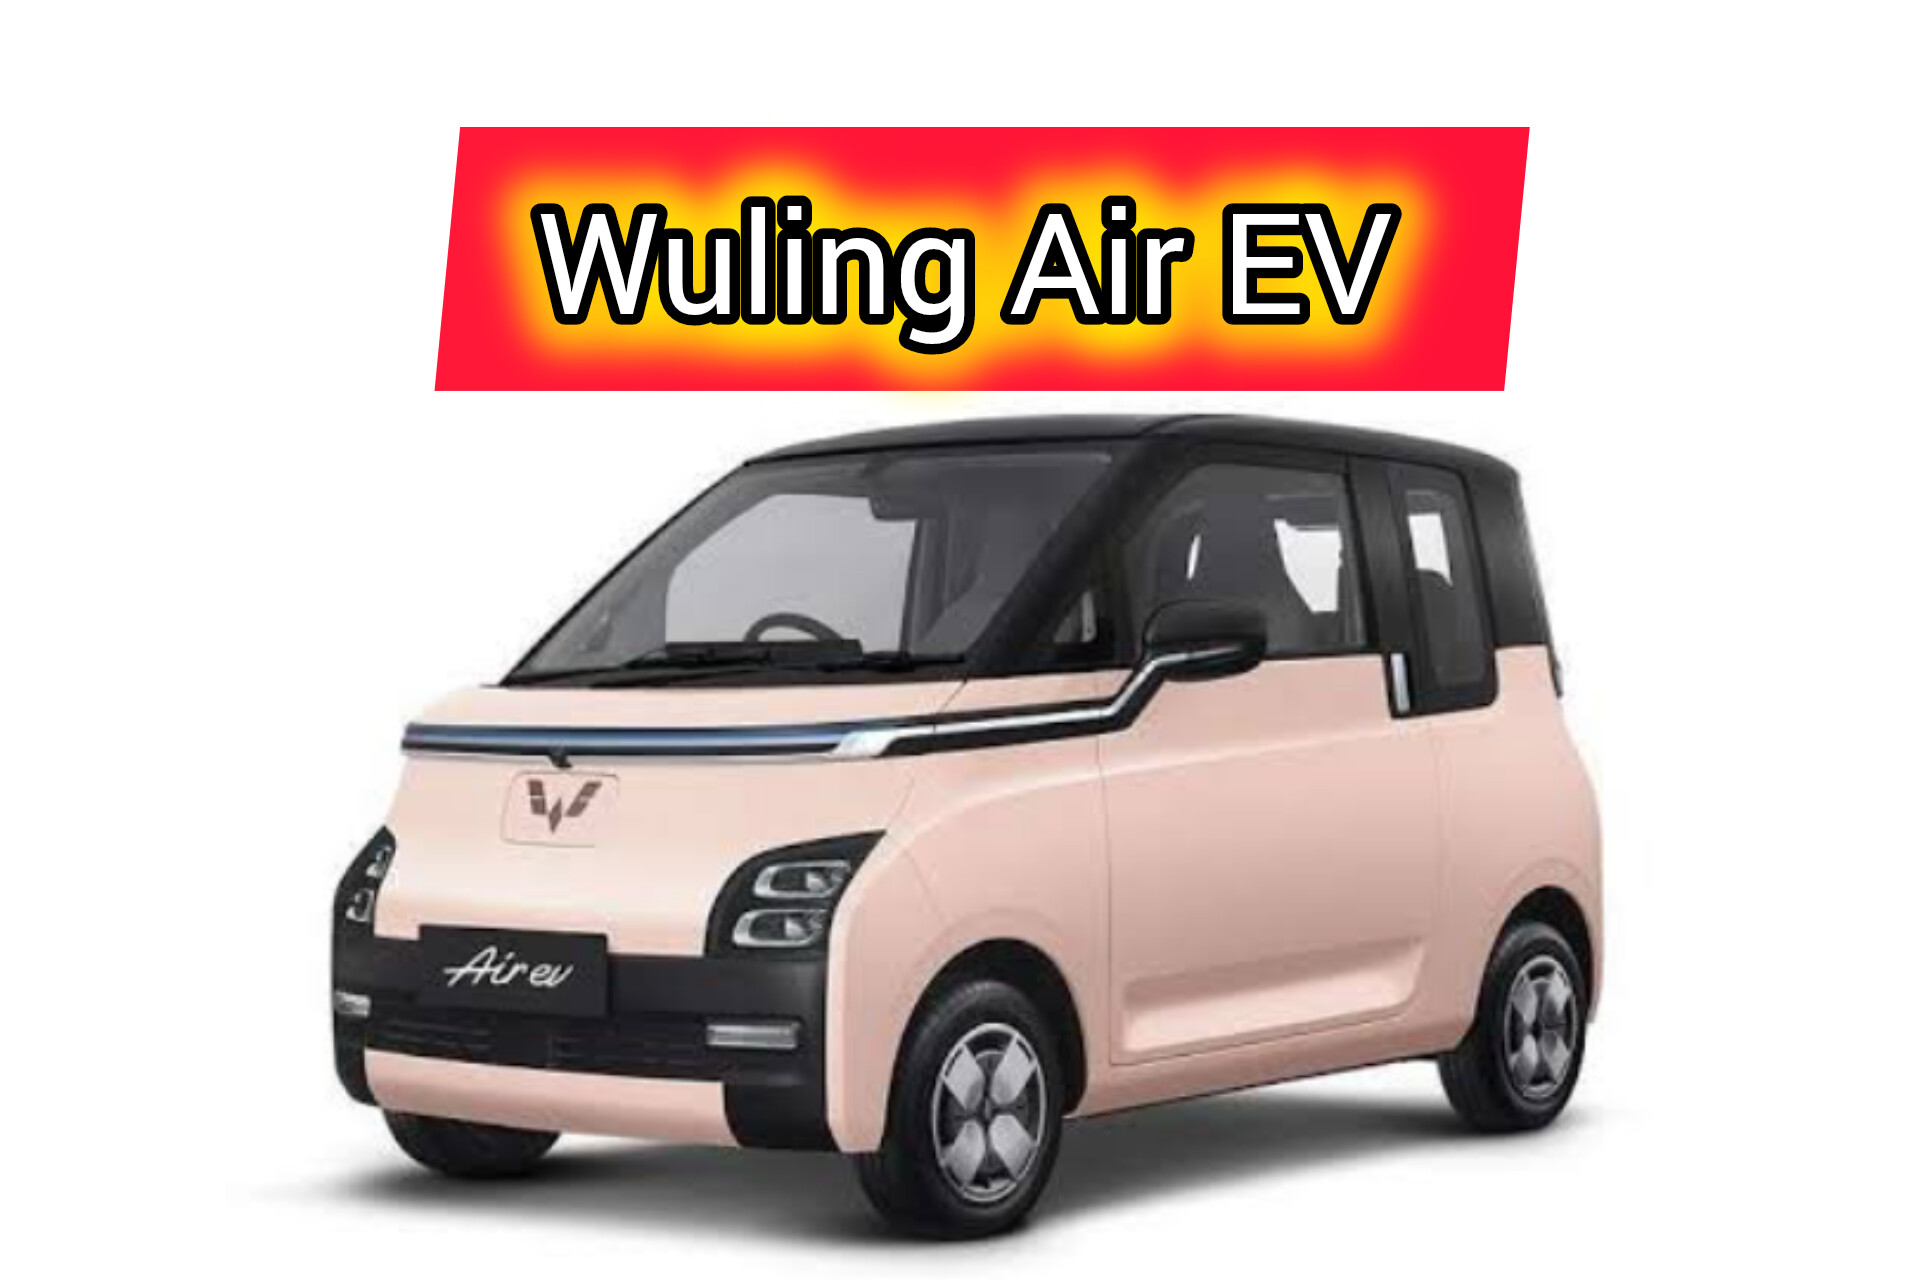 Wuling Air EV: Mobil Listrik Favorit Generasi Z Indonesia, Desain Imut, Mungil dan Warna Cerah